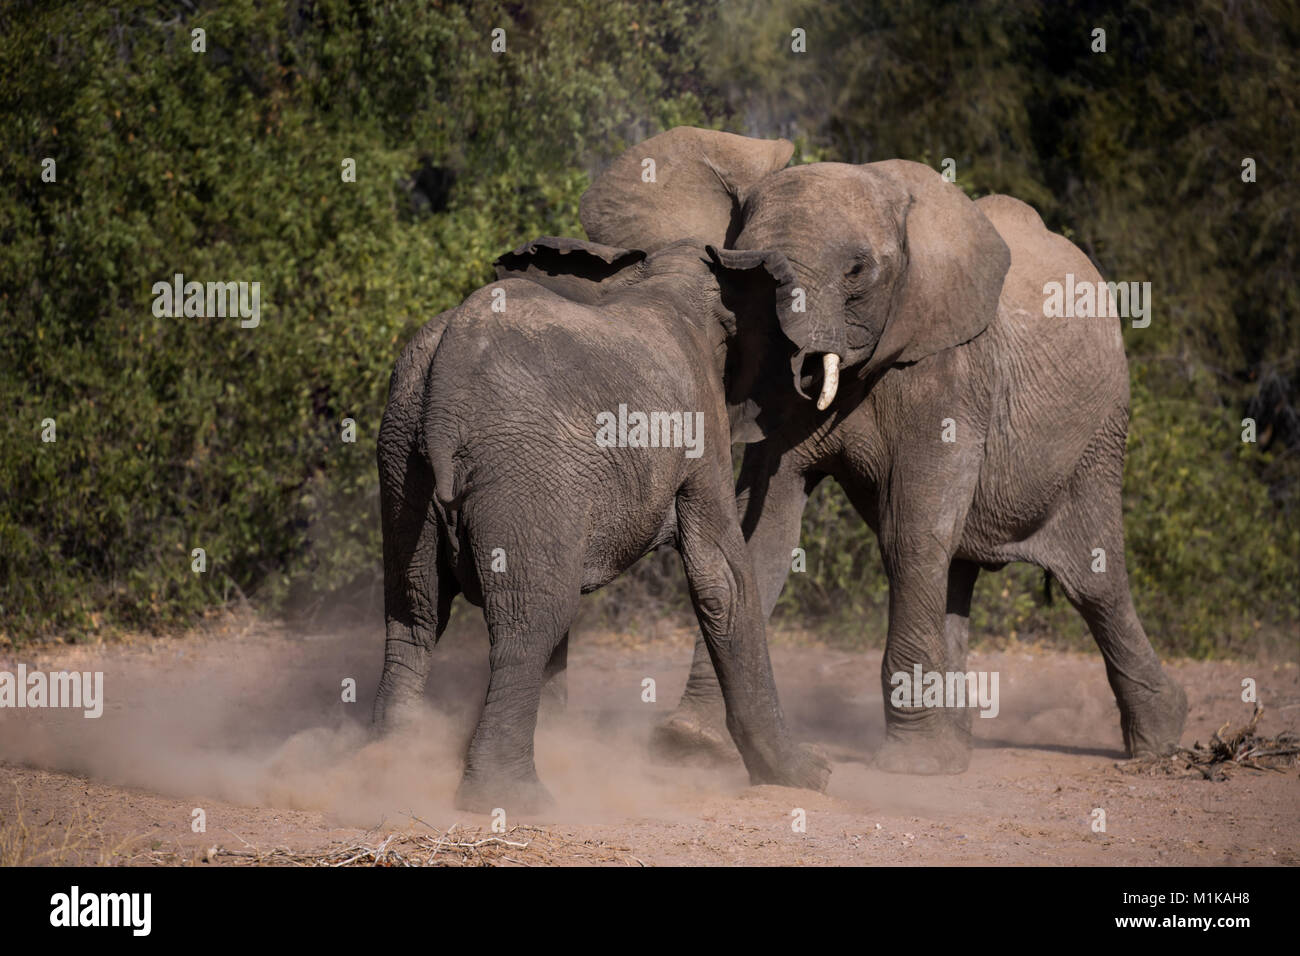 Dos jóvenes elefantes jugando en una demostración de fuerza para desafiar recíprocamente por empujando y empujando. Foto de stock